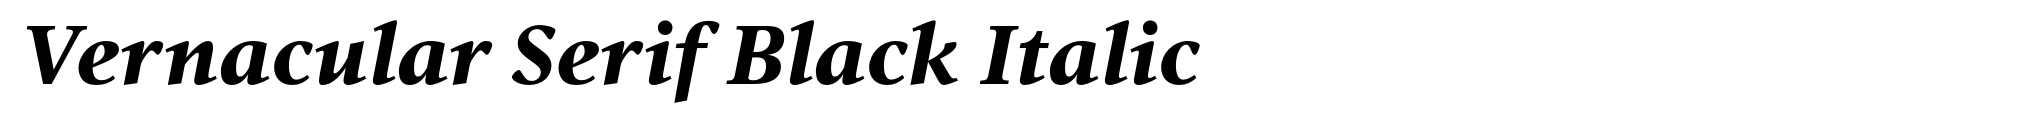 Vernacular Serif Black Italic image